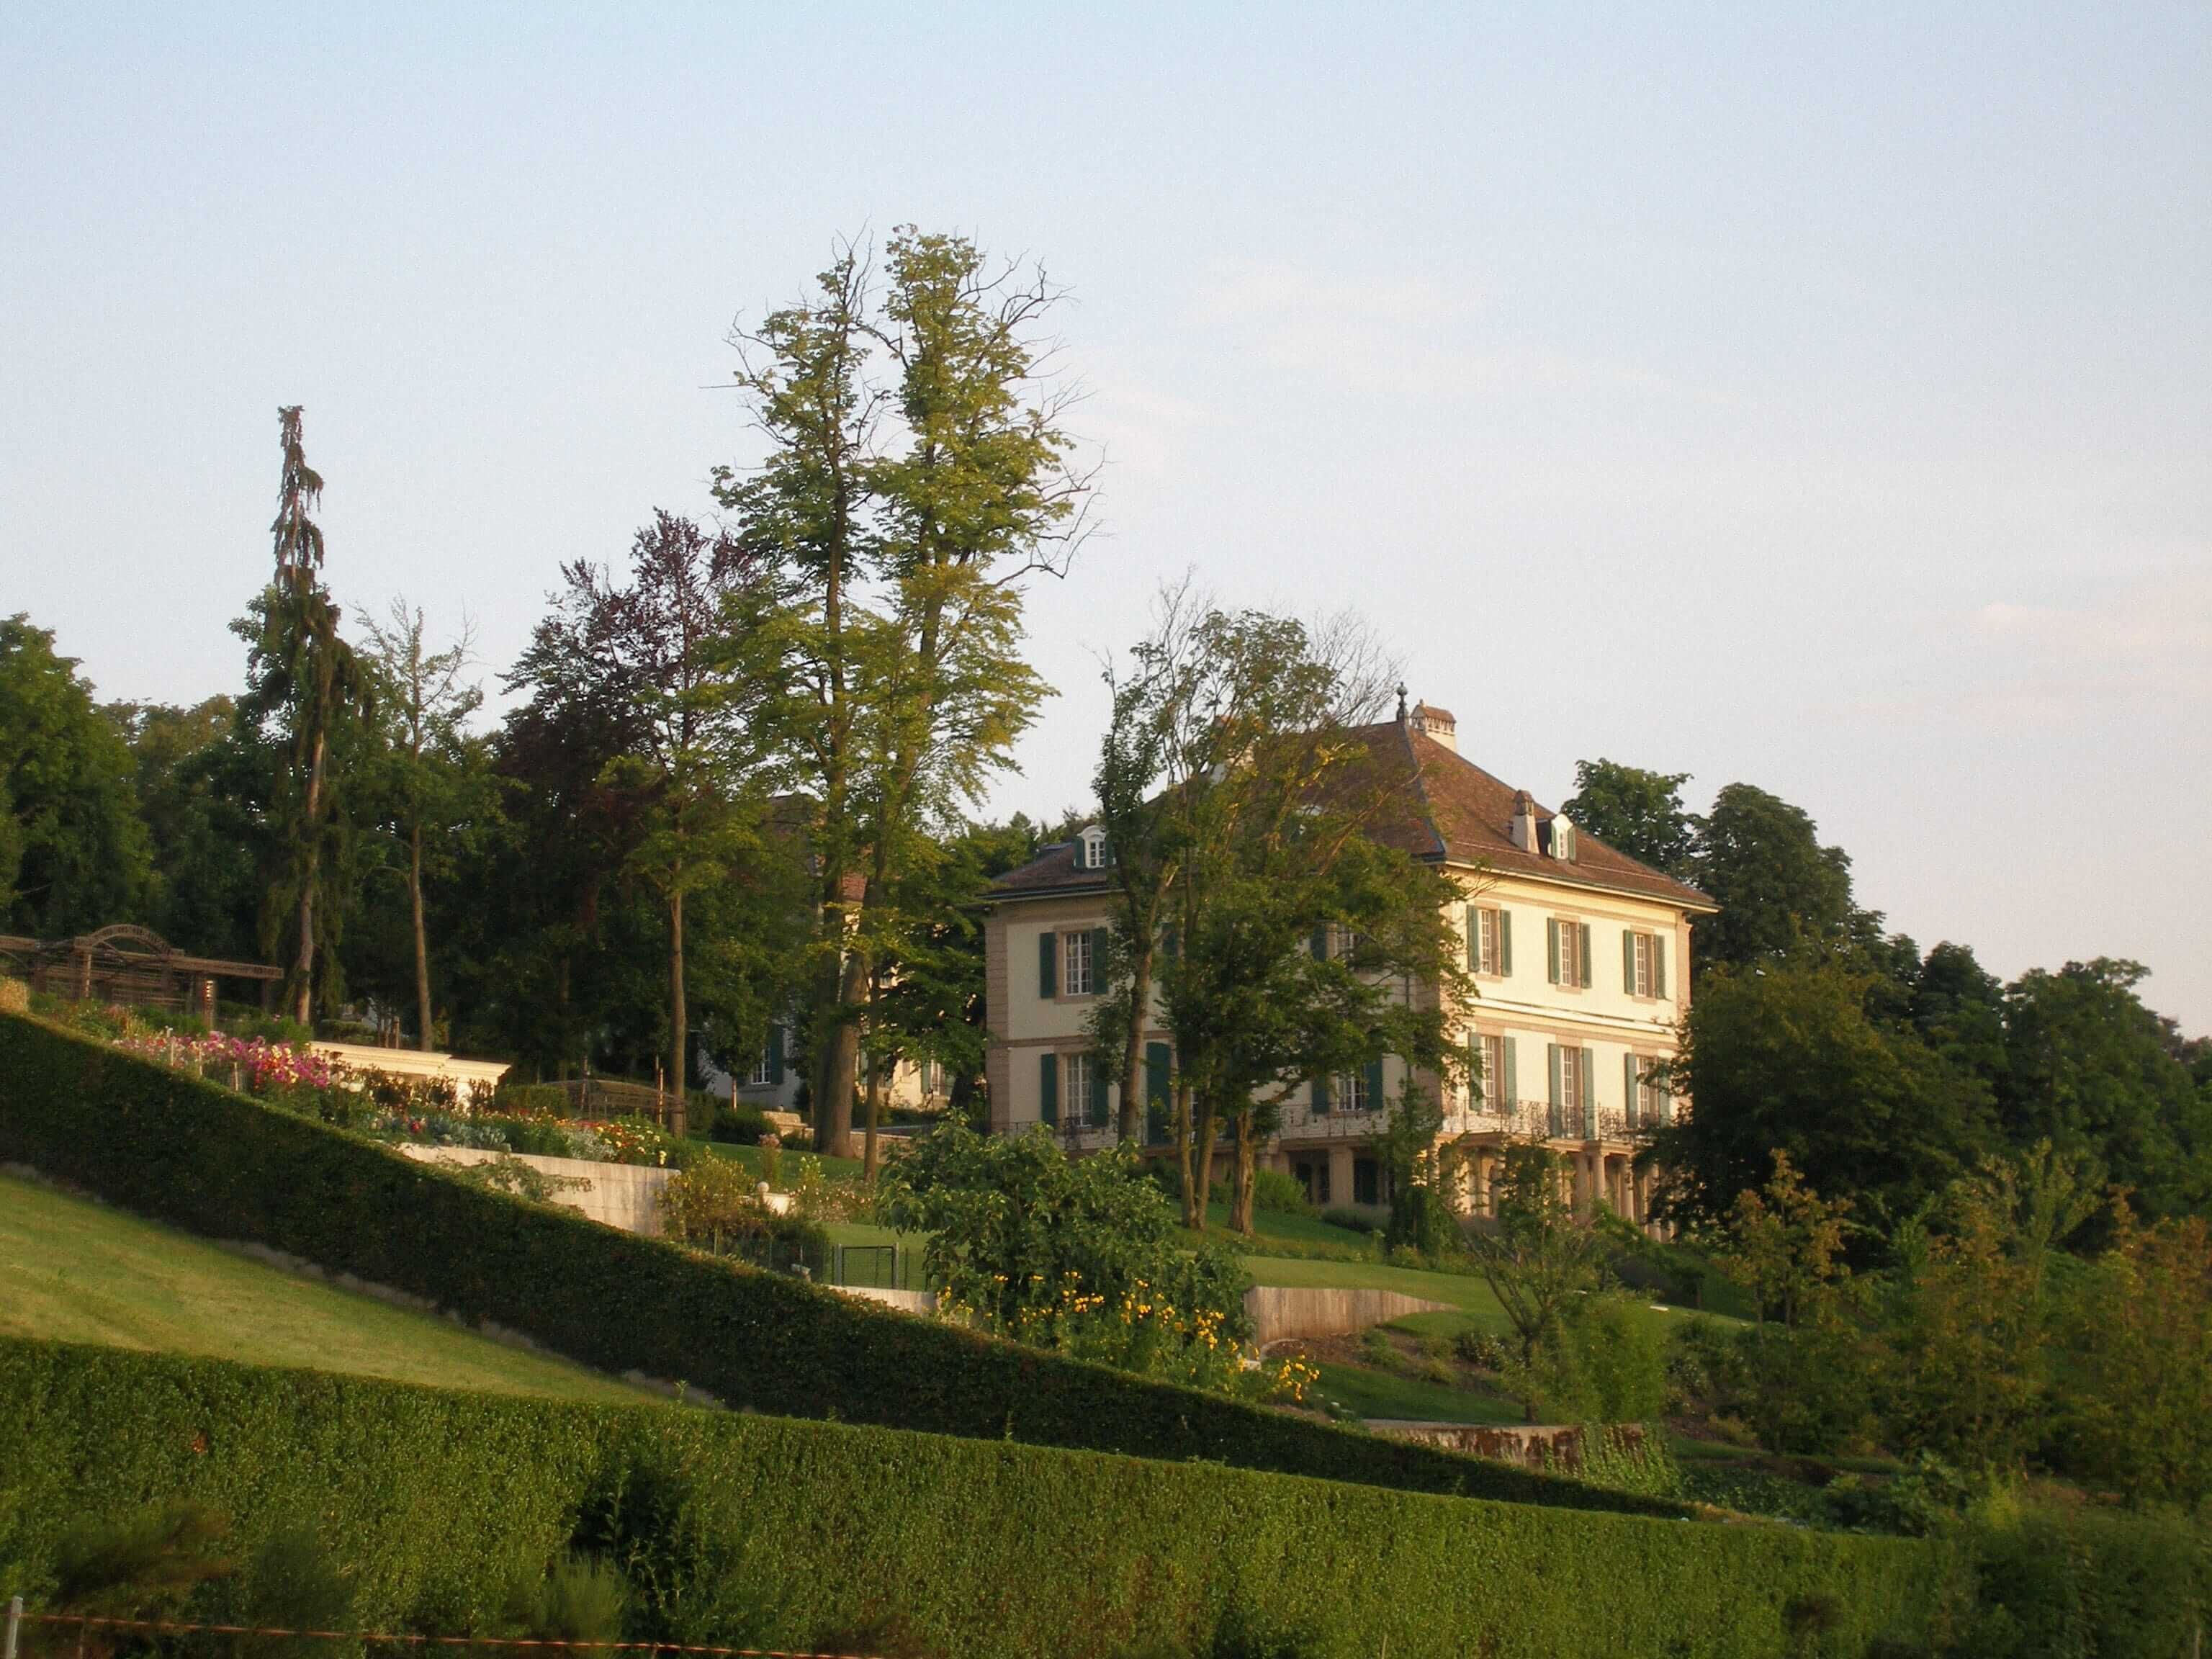 Вилла Диодати у Женевского озера в Швейцарии, где Байрон и супруги Шелли устроили литературное состязание. Фото: wikipedia.org